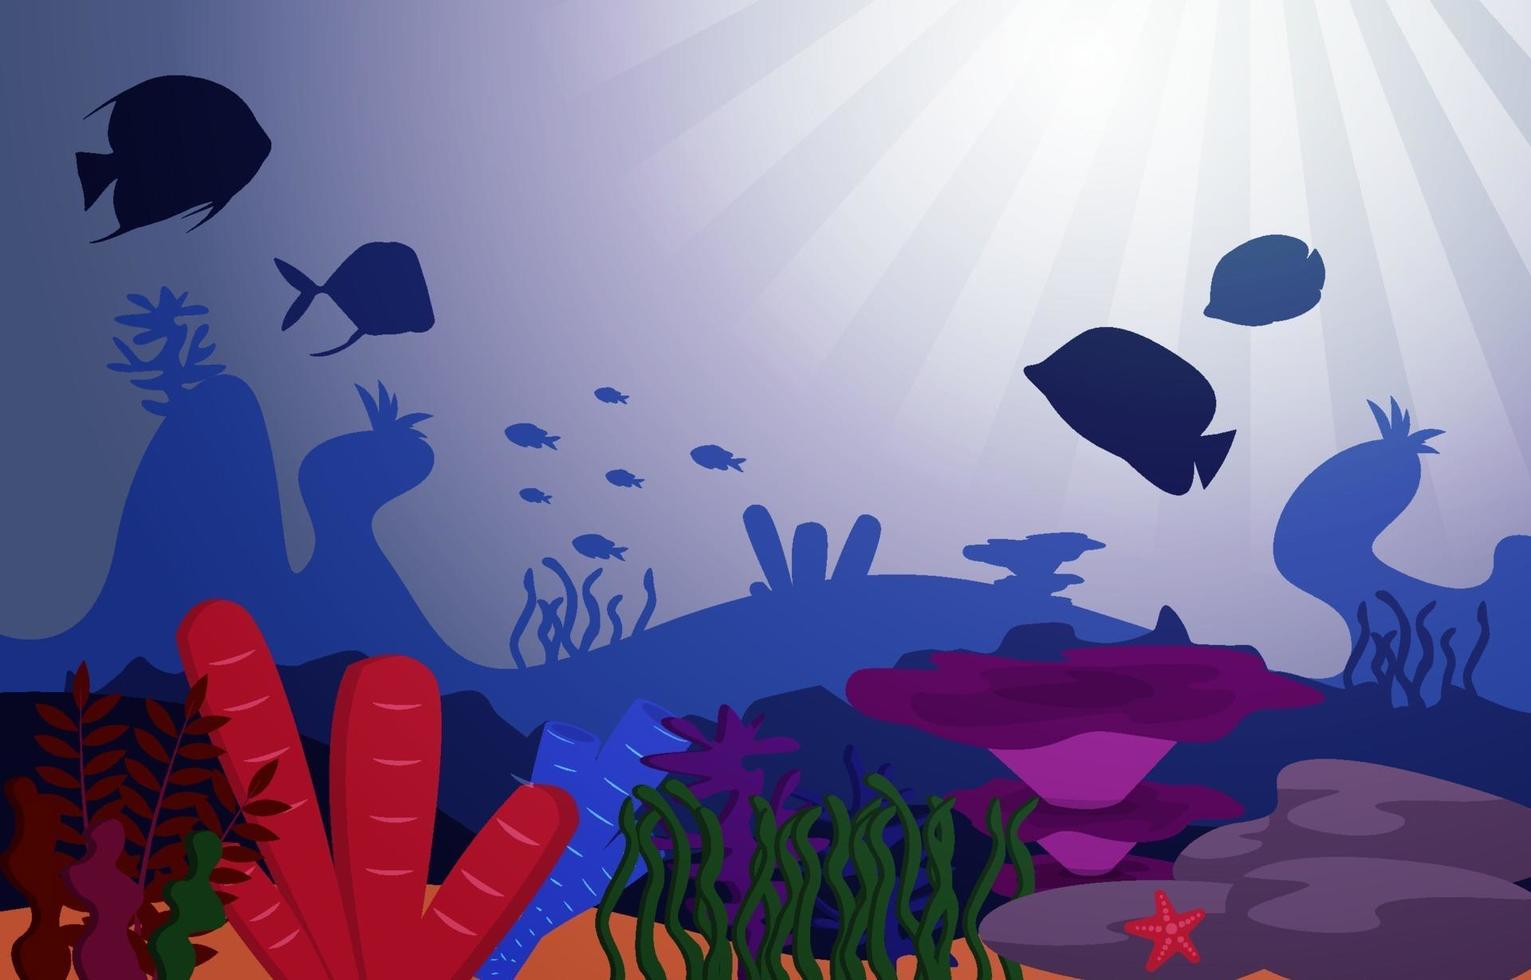 Tierwelt Fisch Meerestiere Korallen Ozean Unterwasser Wasser Illustration vektor